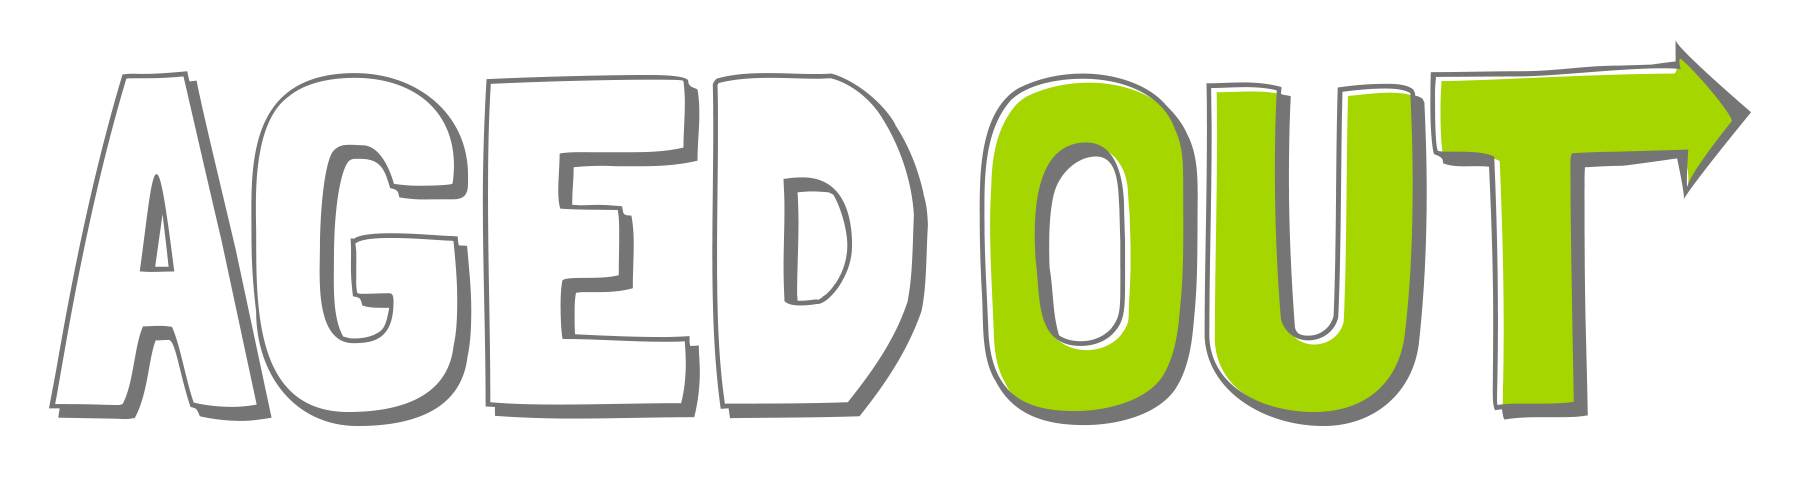 AgedOut.com logo